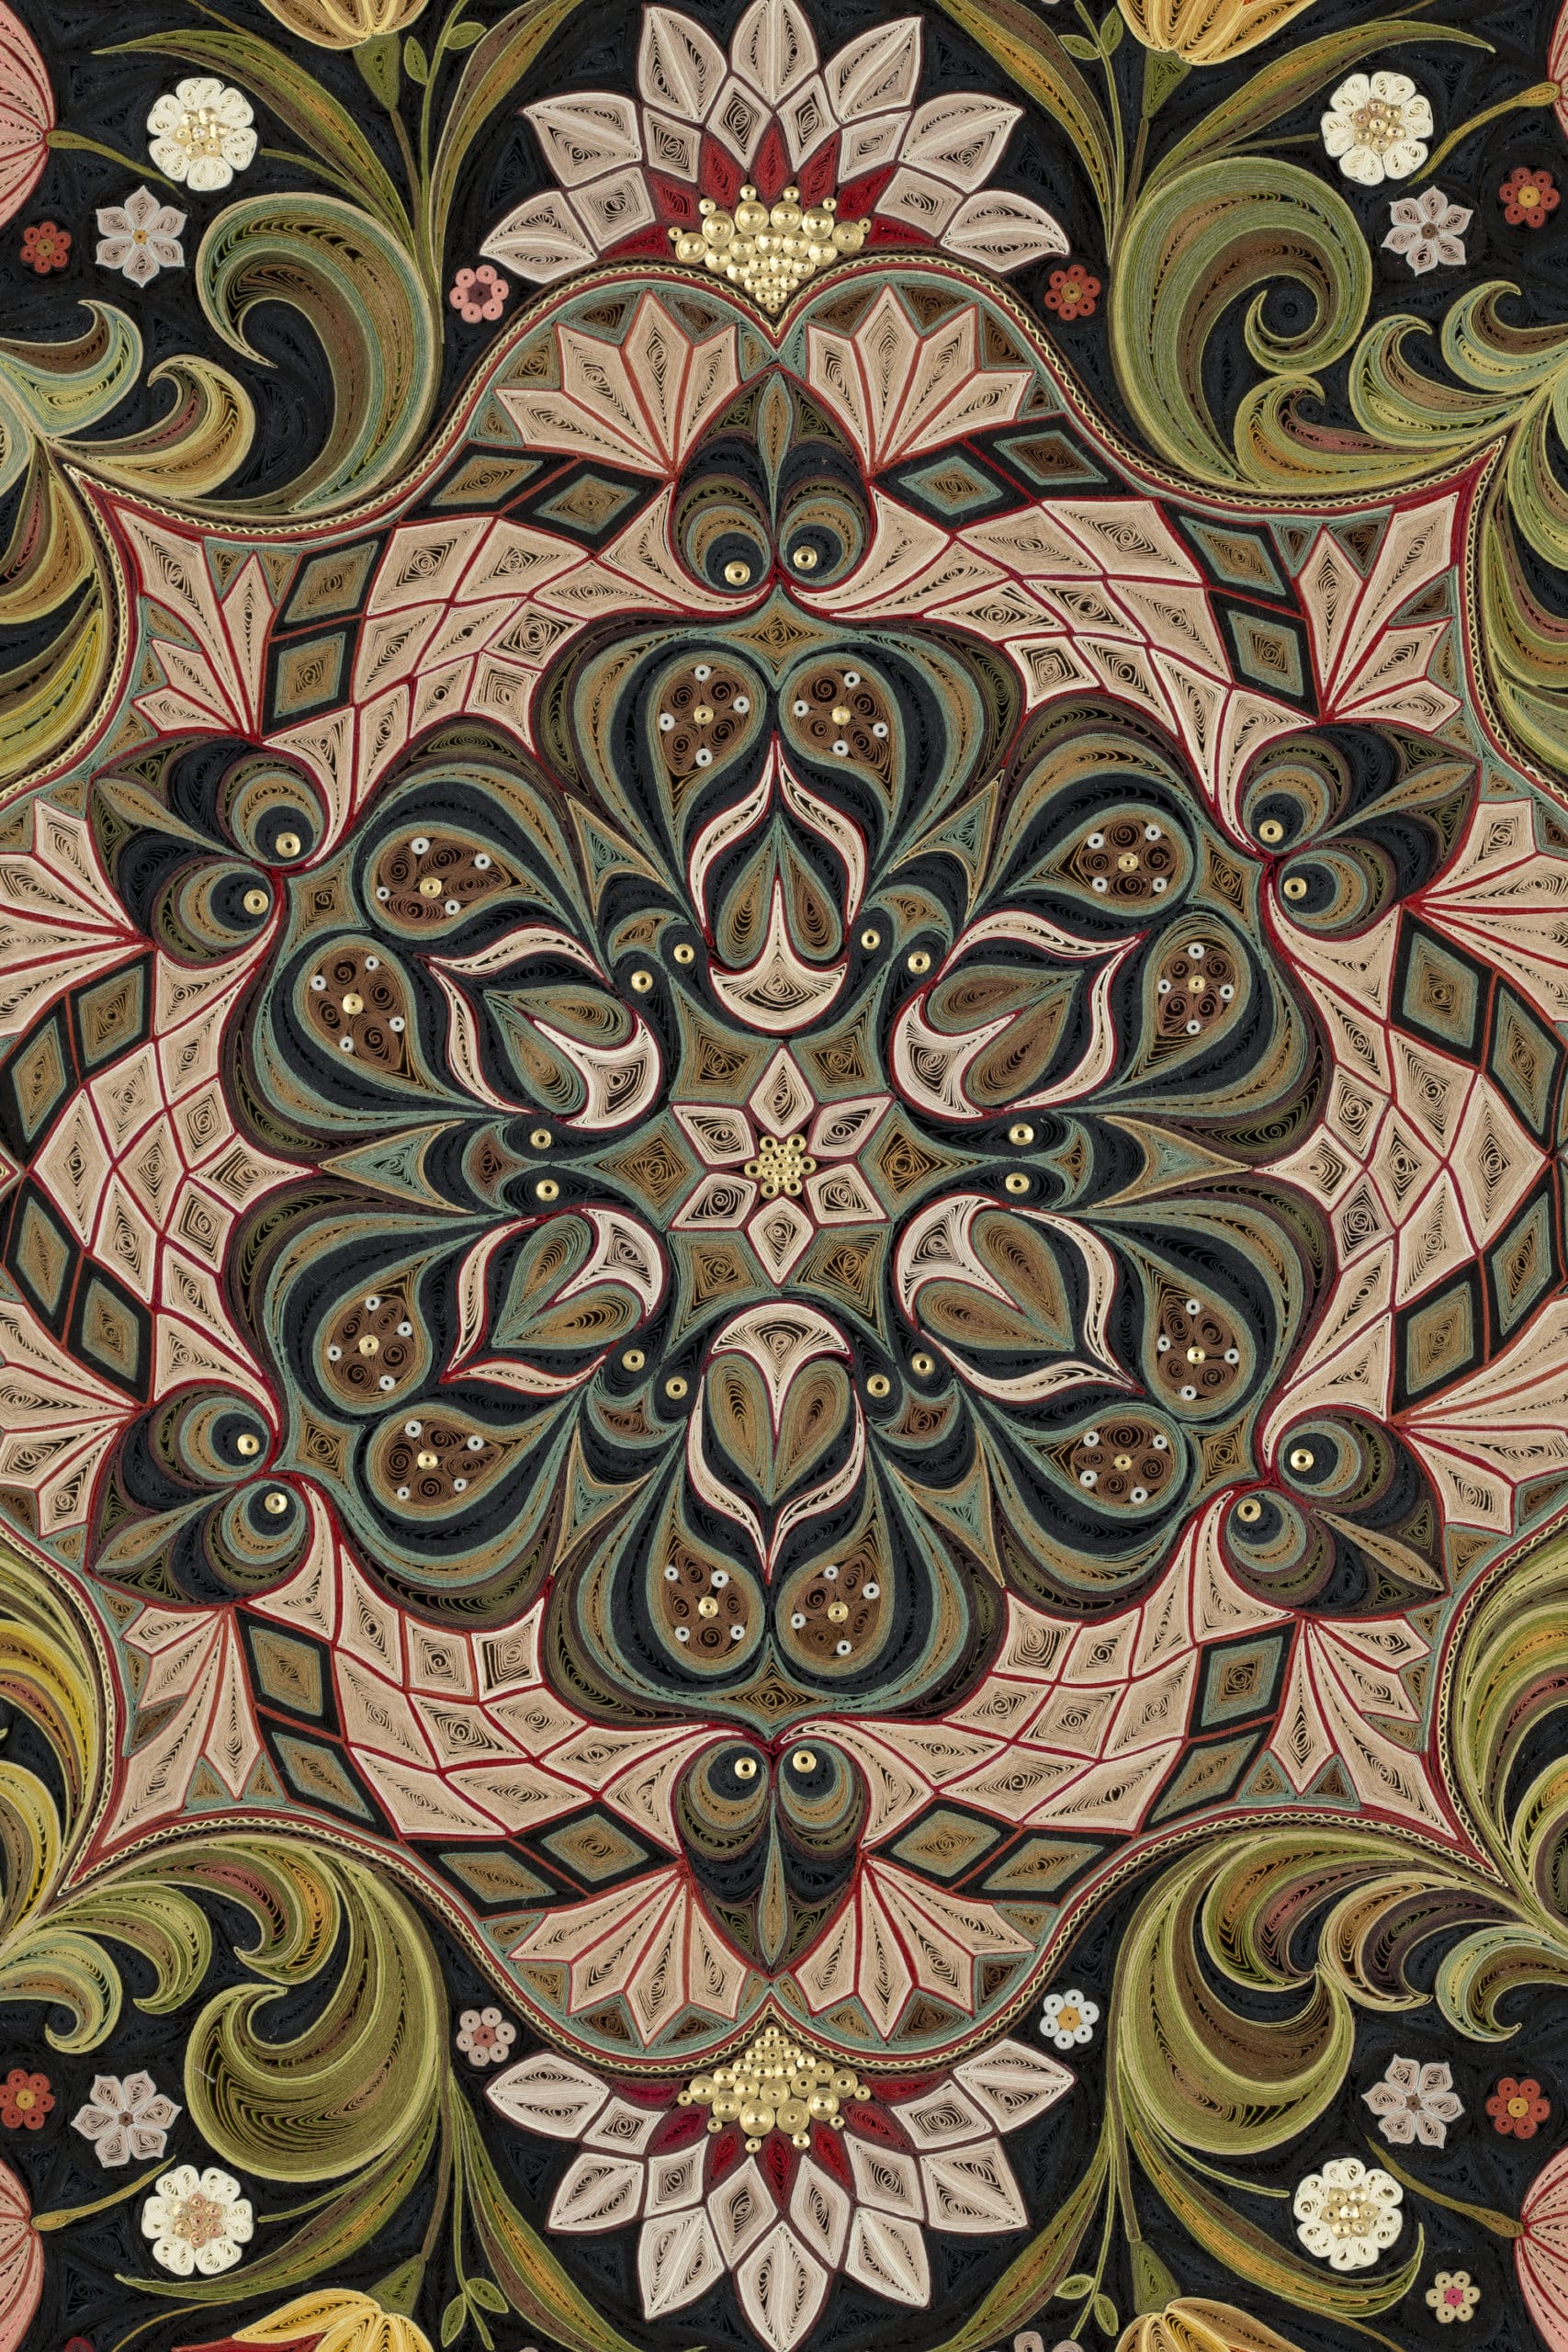 lisa nilsson tapiz filigrana grand jardin inpirado en tapete persa detalle ornamentacion